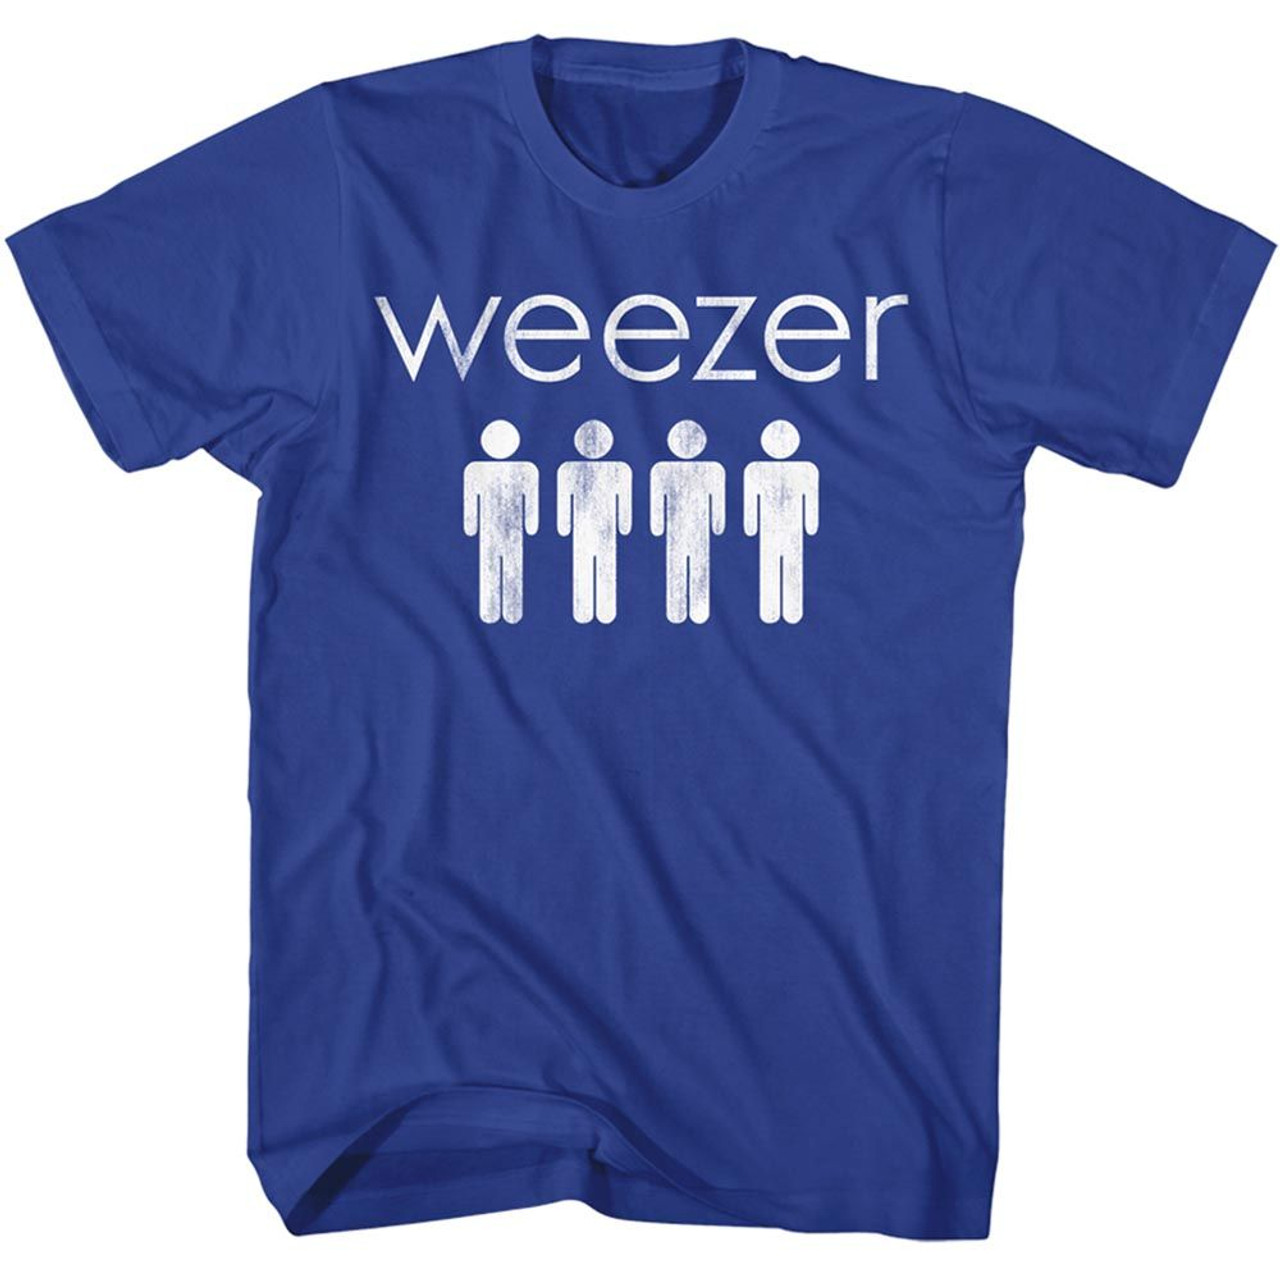 weezer 4 dudes t shirt 7295 bnd9a